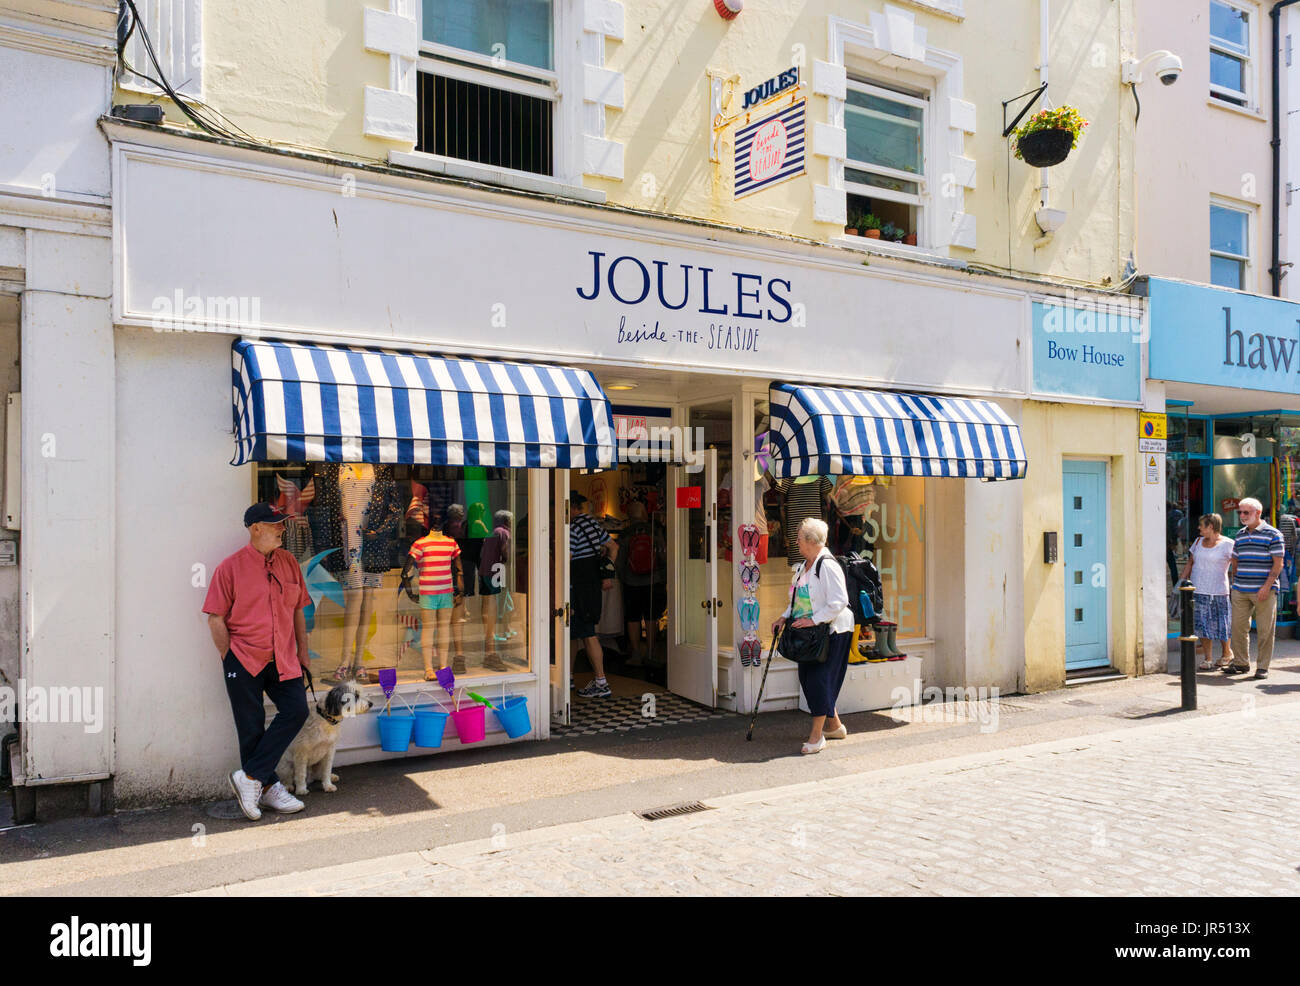 Joules negozio di abbigliamento, England, Regno Unito Foto Stock